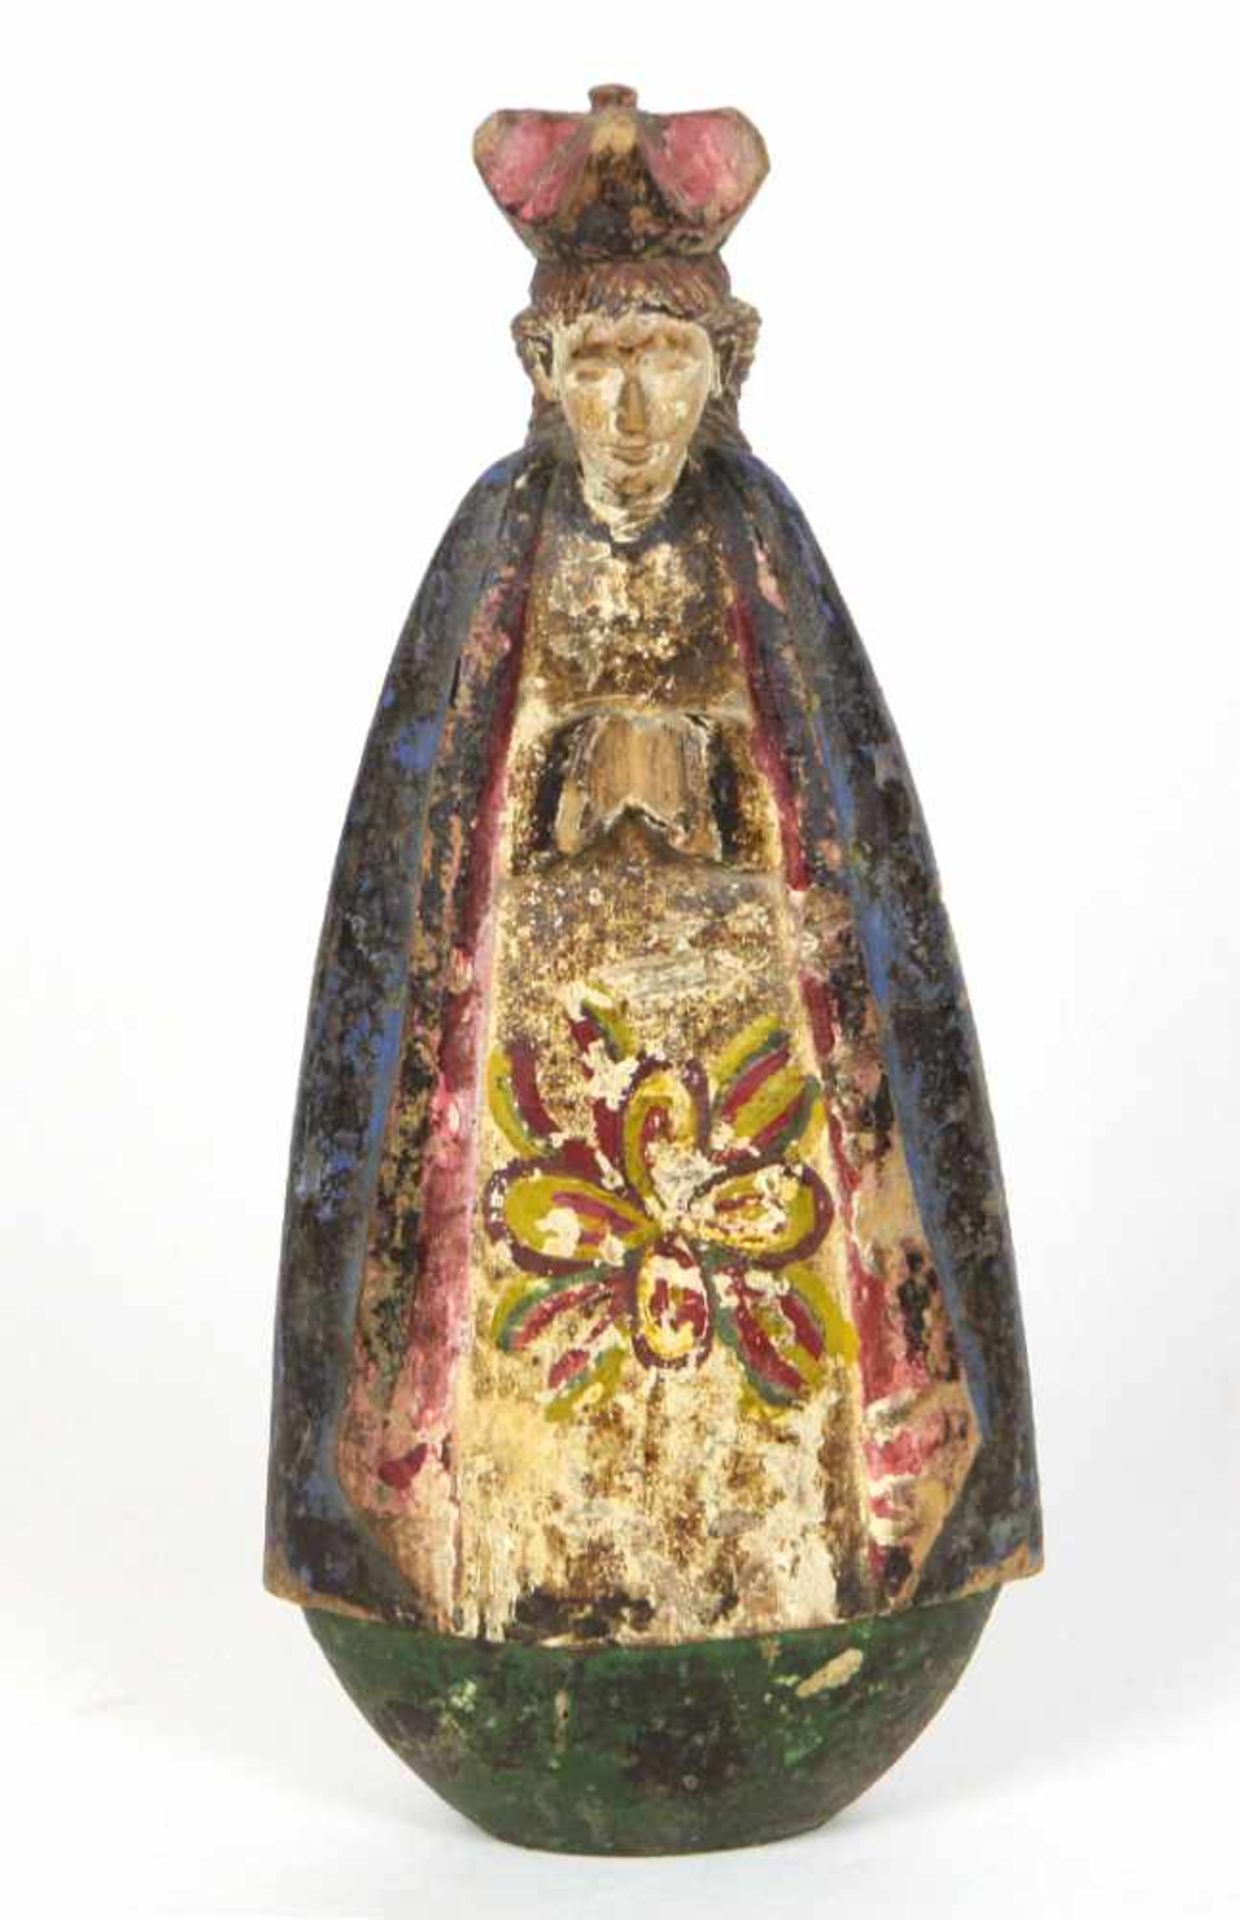 geschnitzte Madonna 19. Jhd.Holz von Hand beschnitzt u. farbig gefasst, flacher Korpus mit leicht